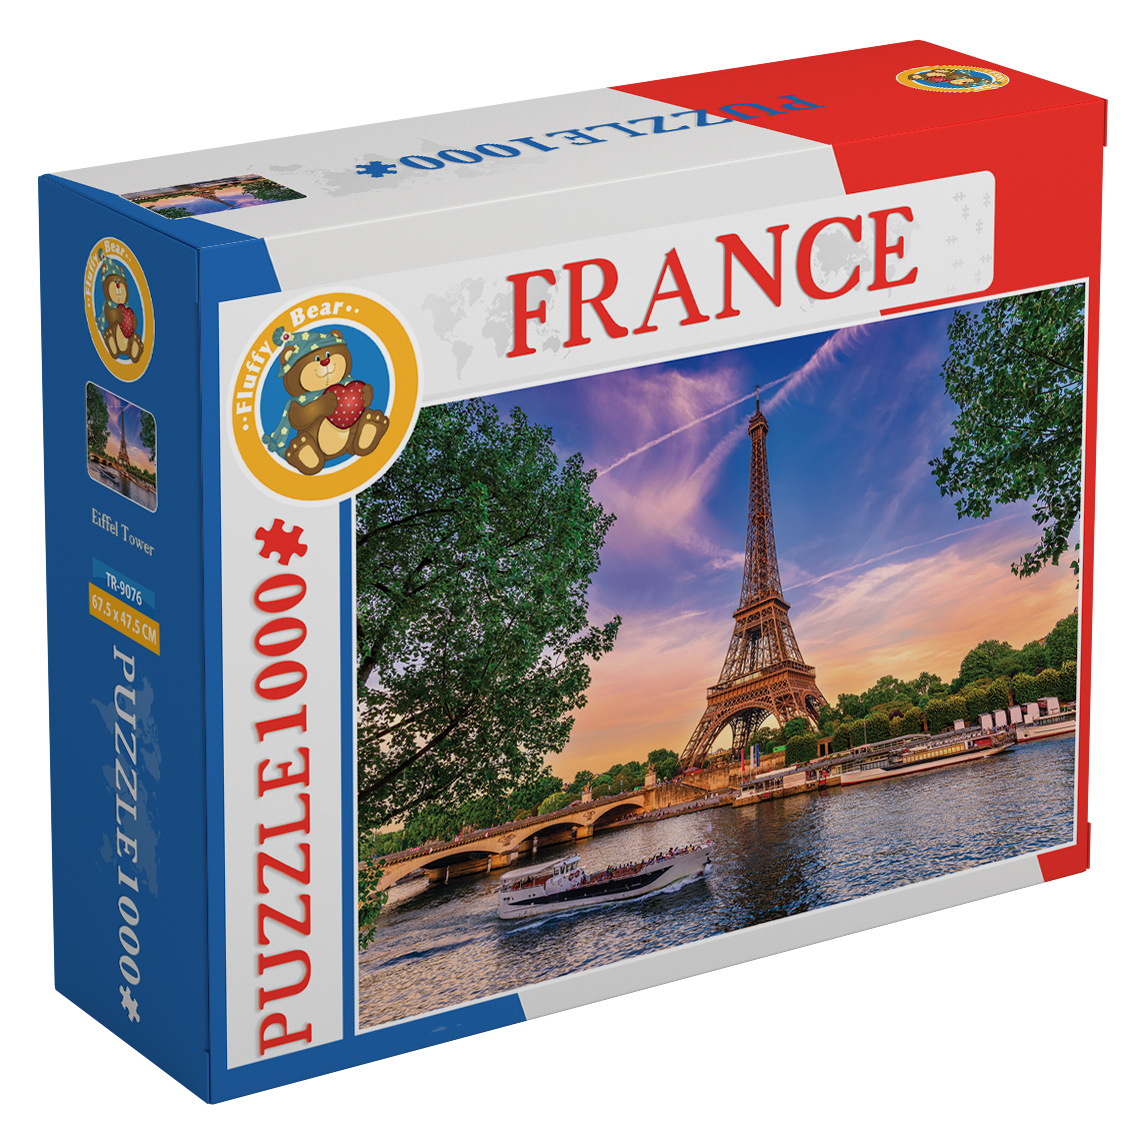 Eiffel Tower – France